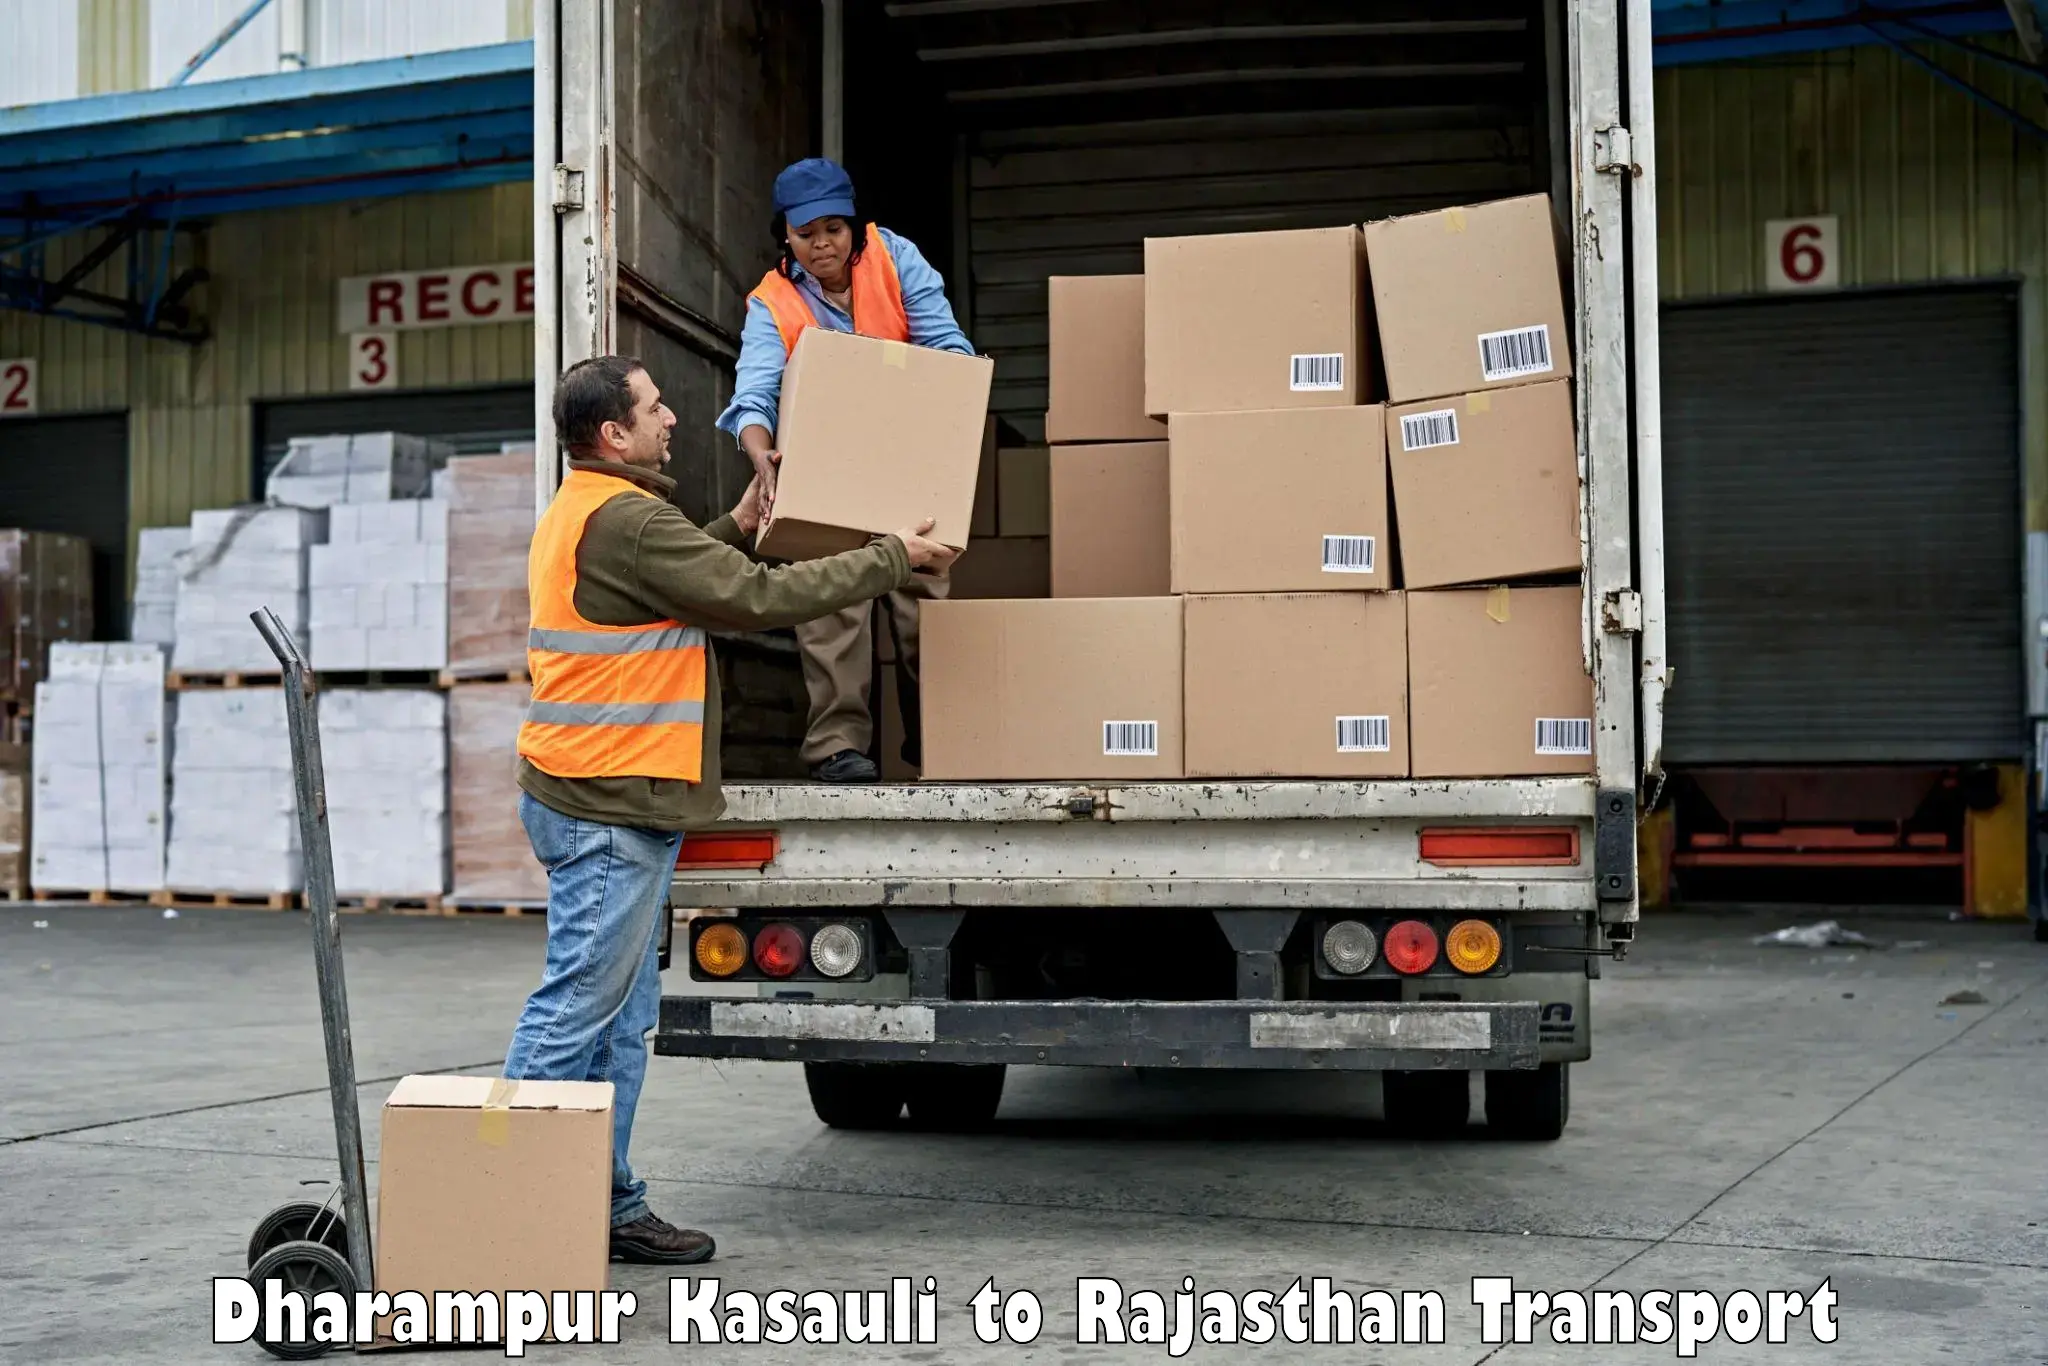 International cargo transportation services Dharampur Kasauli to Hindaun